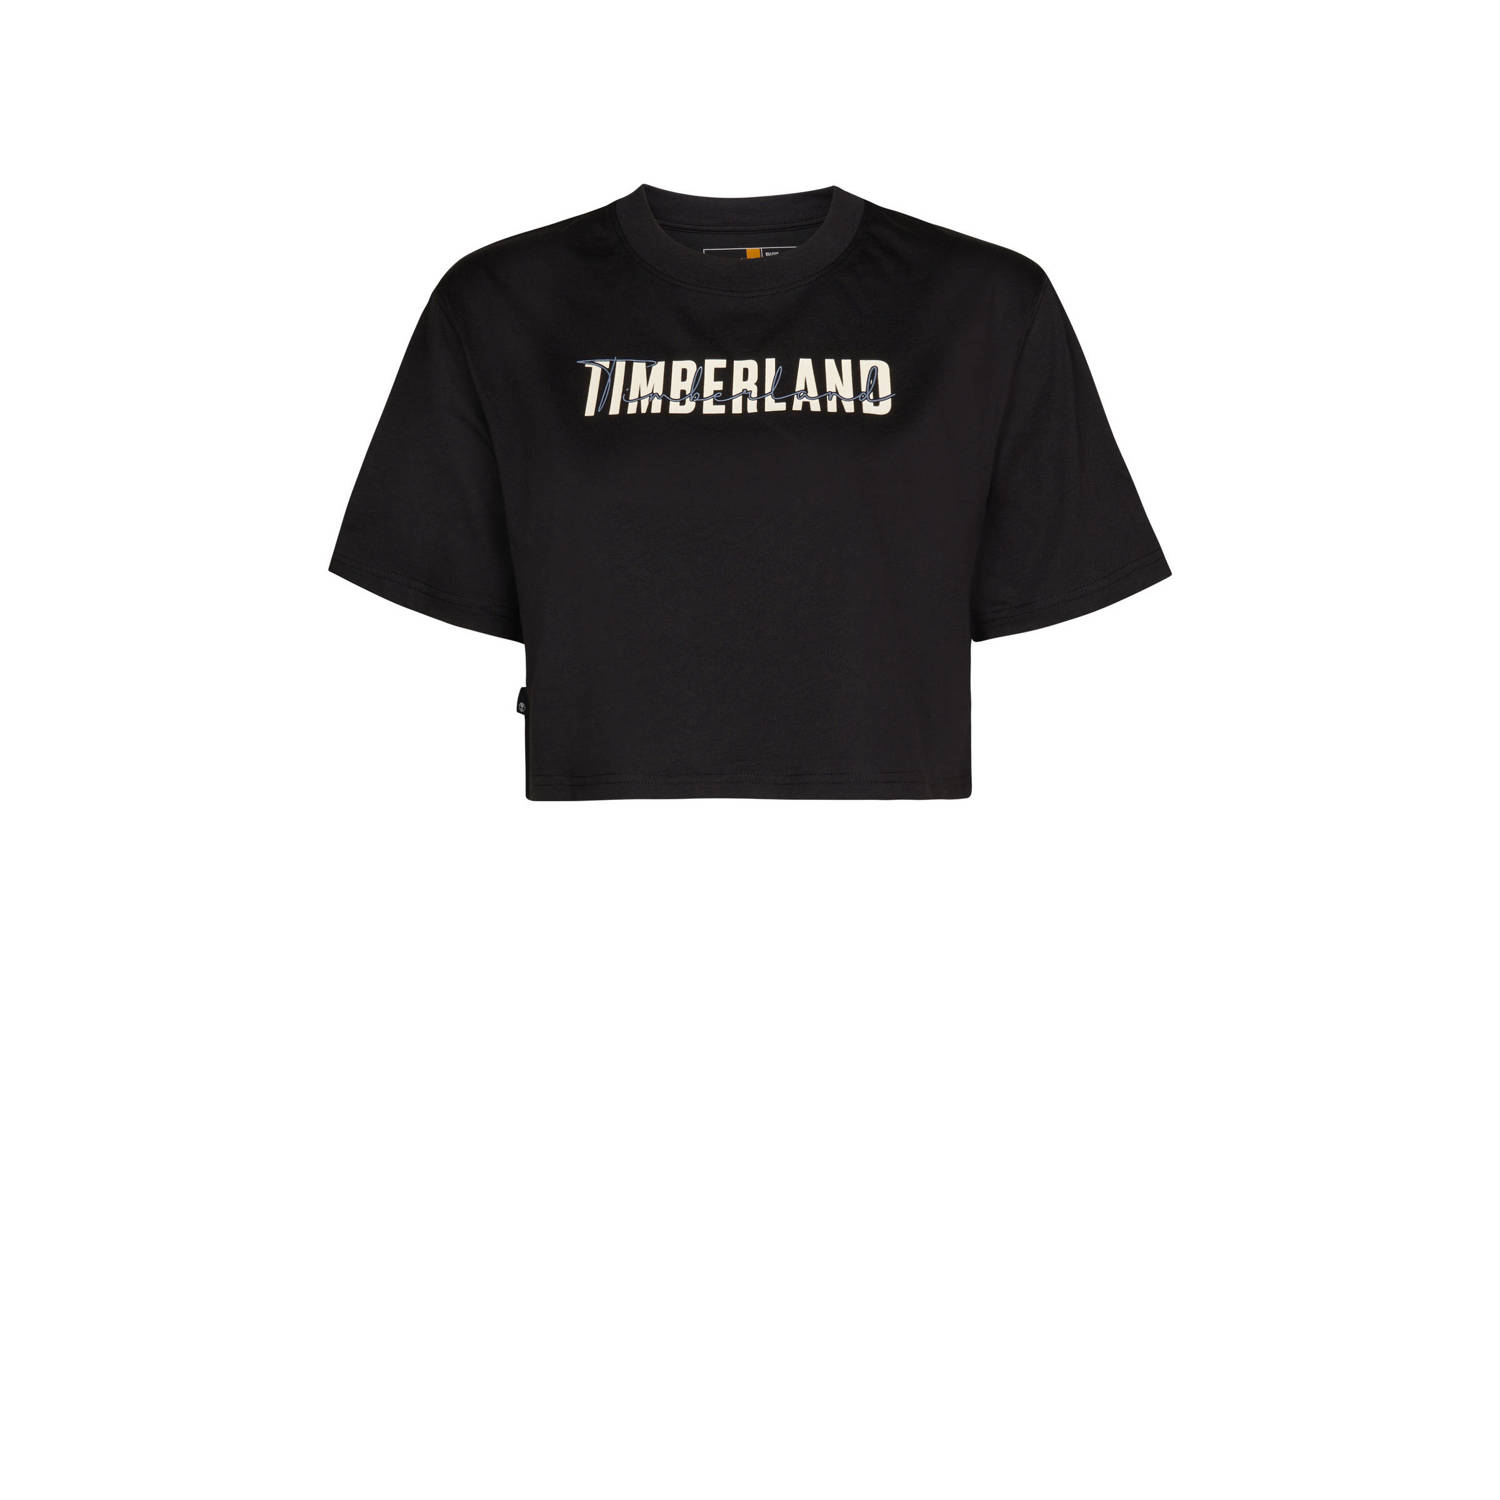 Timberland T-shirt met tekst zwart